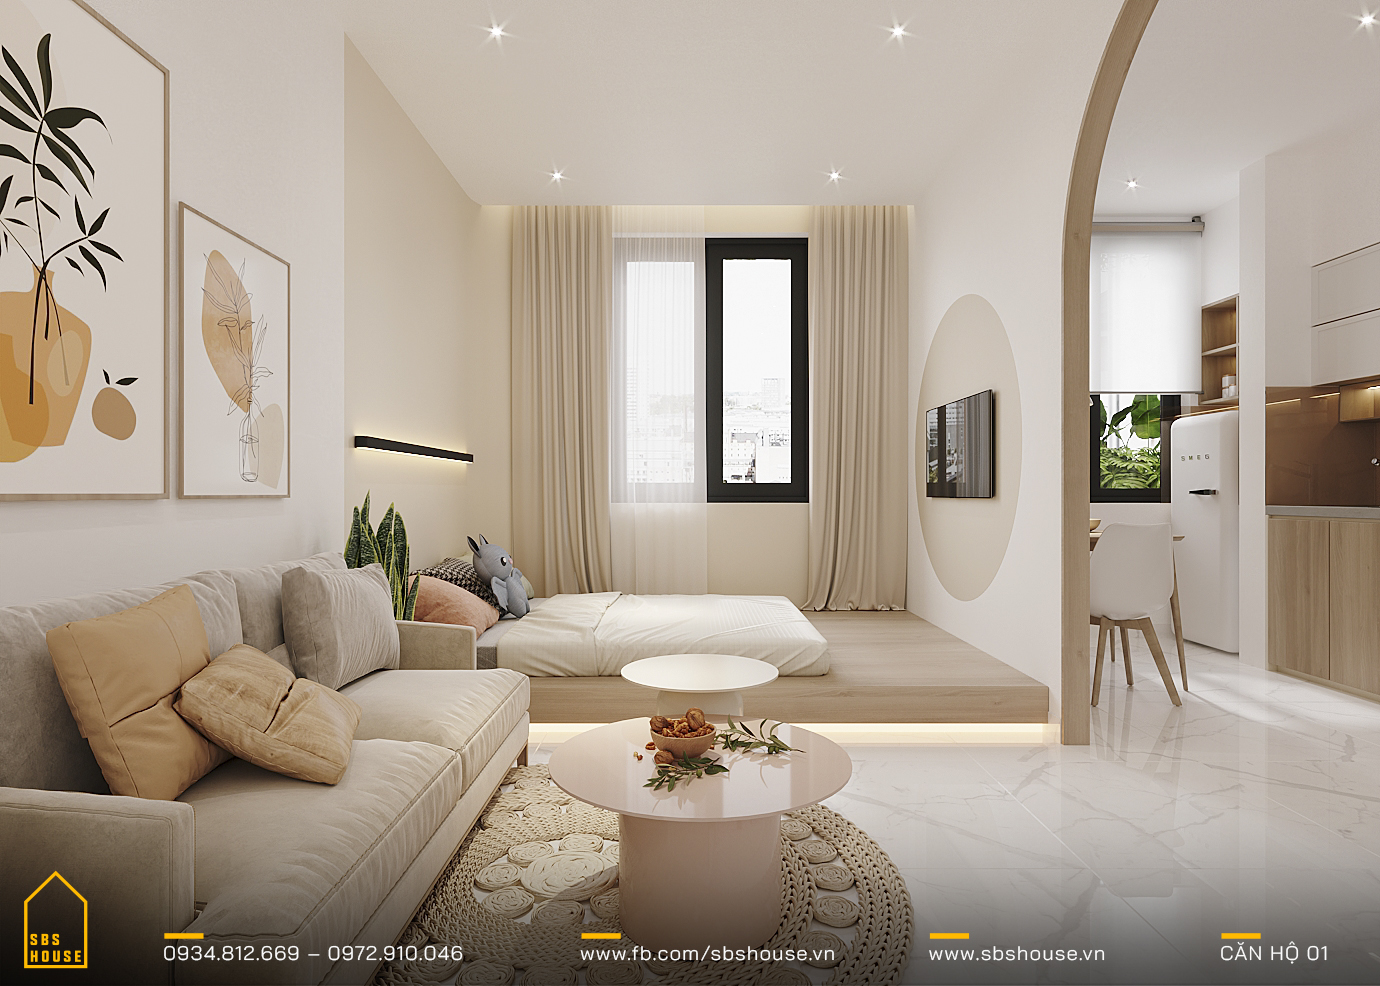 Nội thất căn hộ chung cư đẹp hiện đại (1pn+1)- H Design